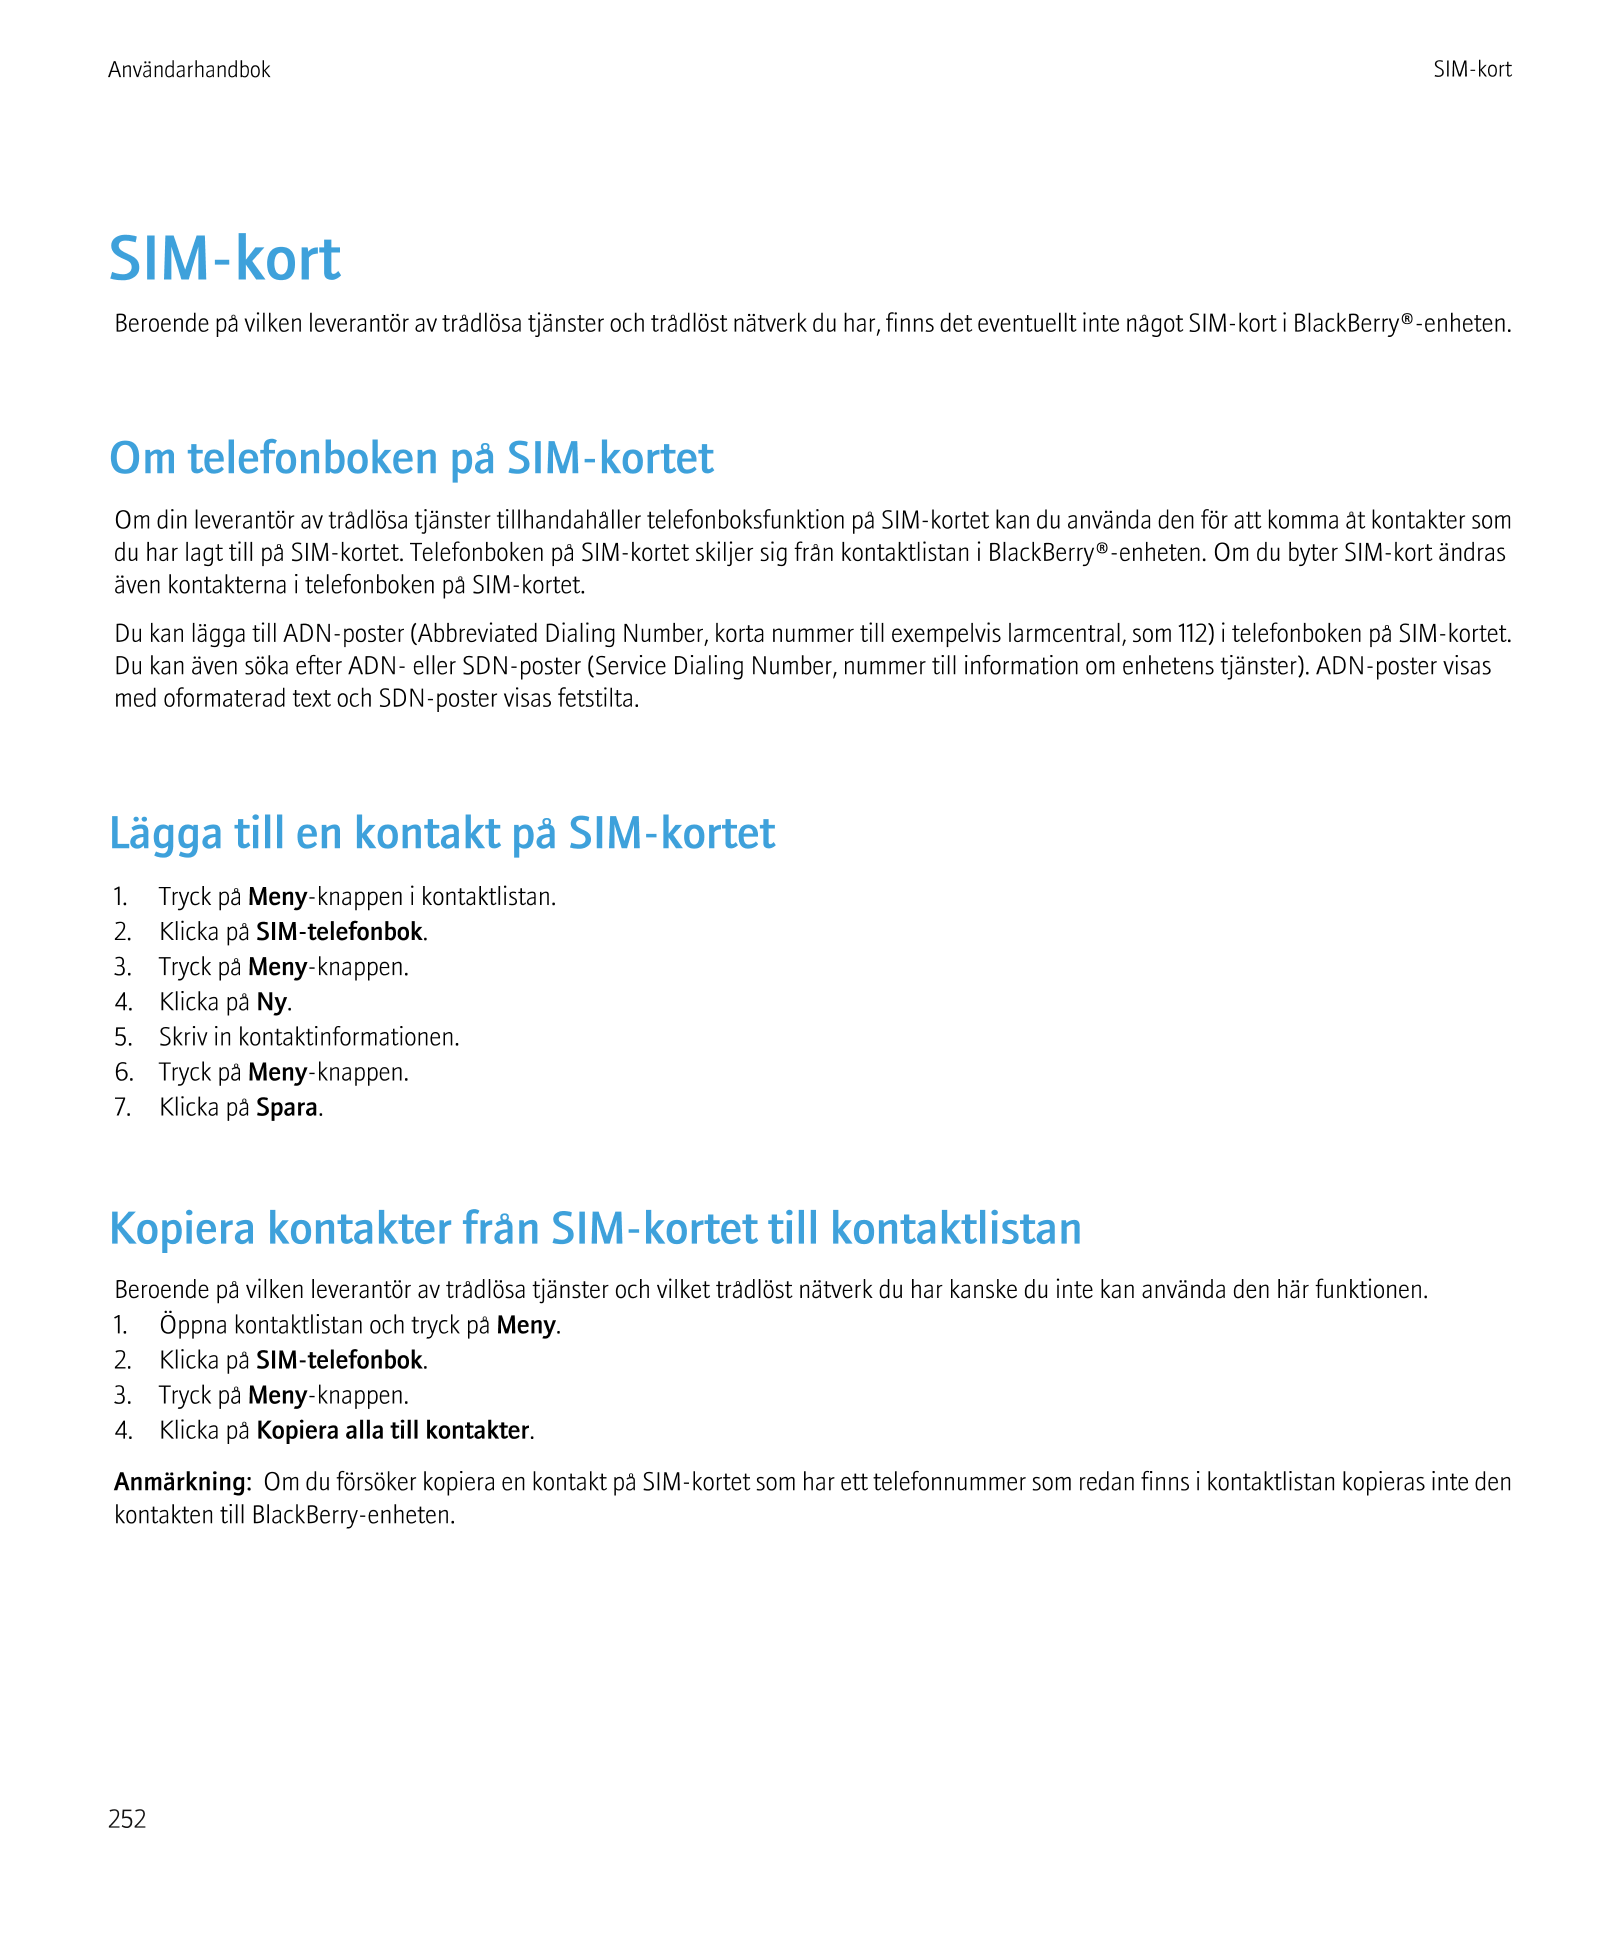 Användarhandbok SIM-kort
SIM-kort
Beroende på vilken leverantör av trådlösa tjänster och trådlöst nätverk du har, finns det even